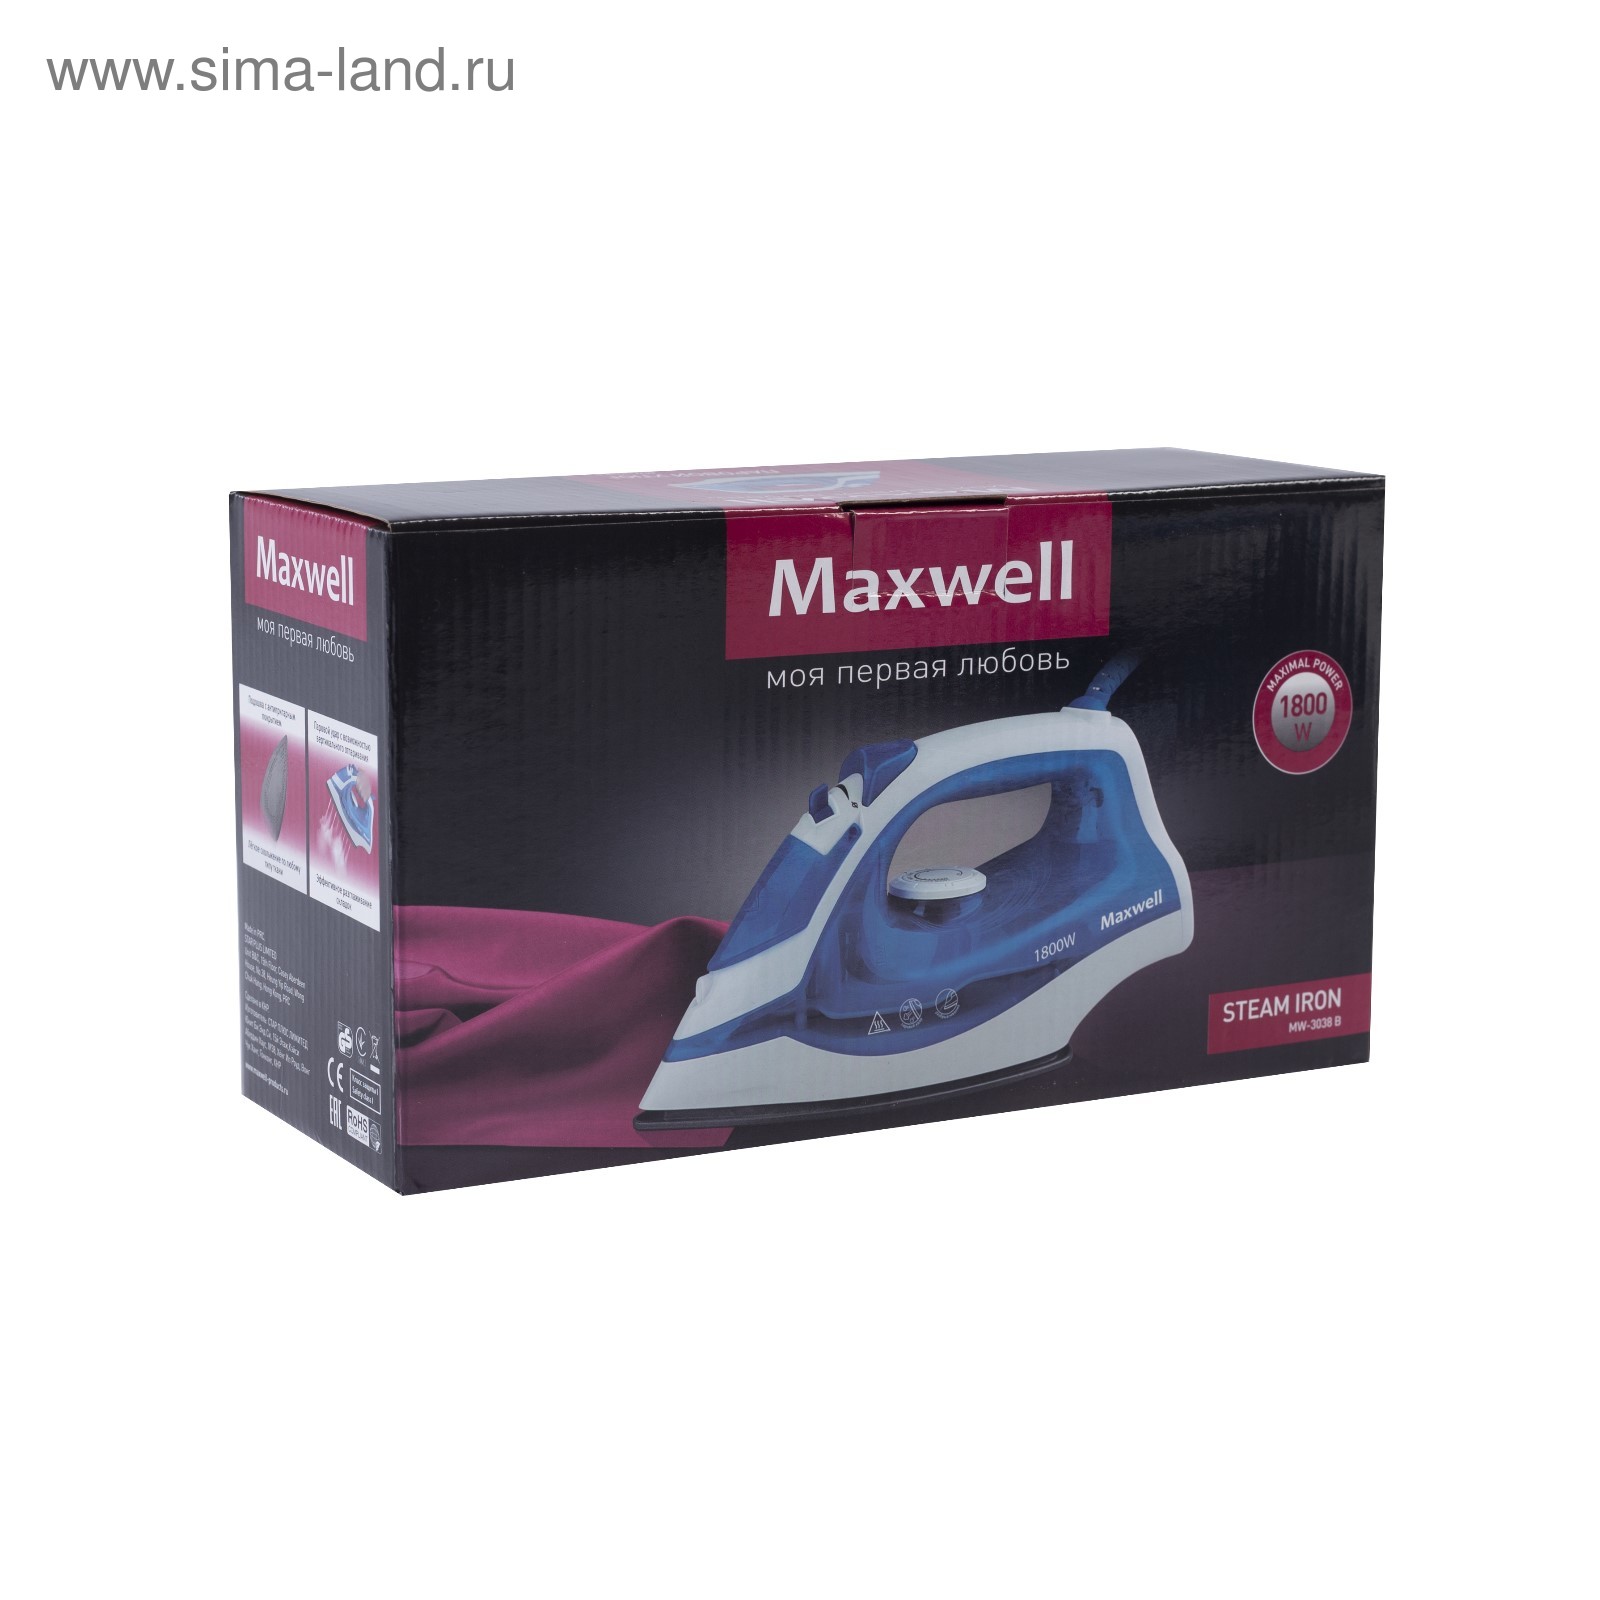 Купить утюг Maxwell MW-3034 BK по выгодной цене в интернет-магазине